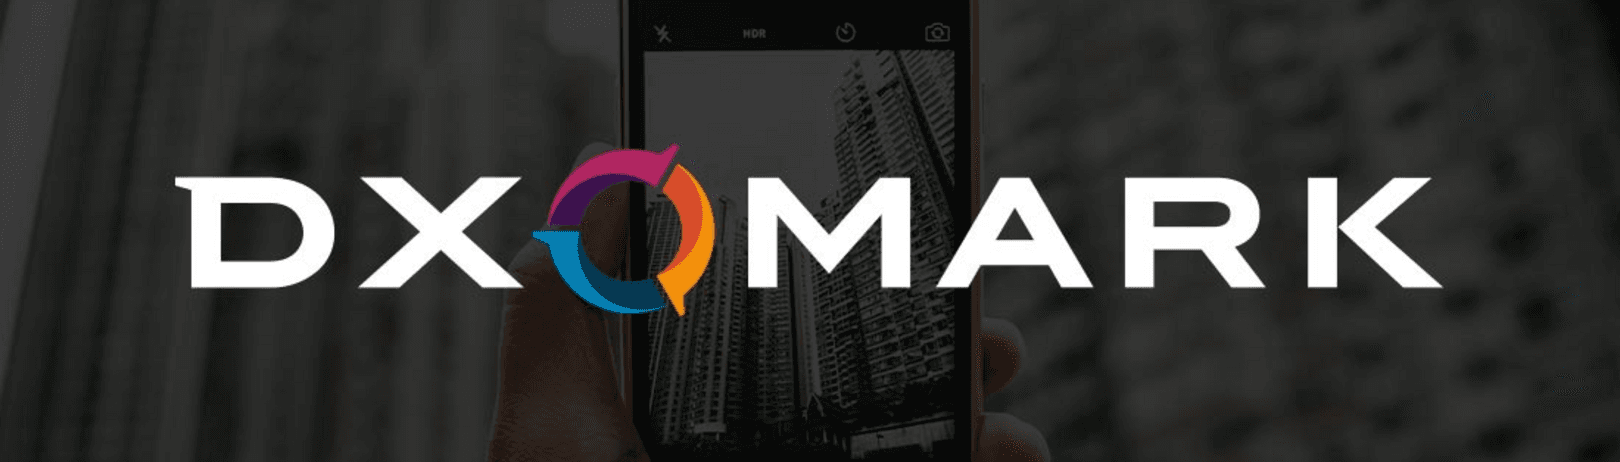 DxOMark: Svetoznáme testy a porovnania fotosmartfónov